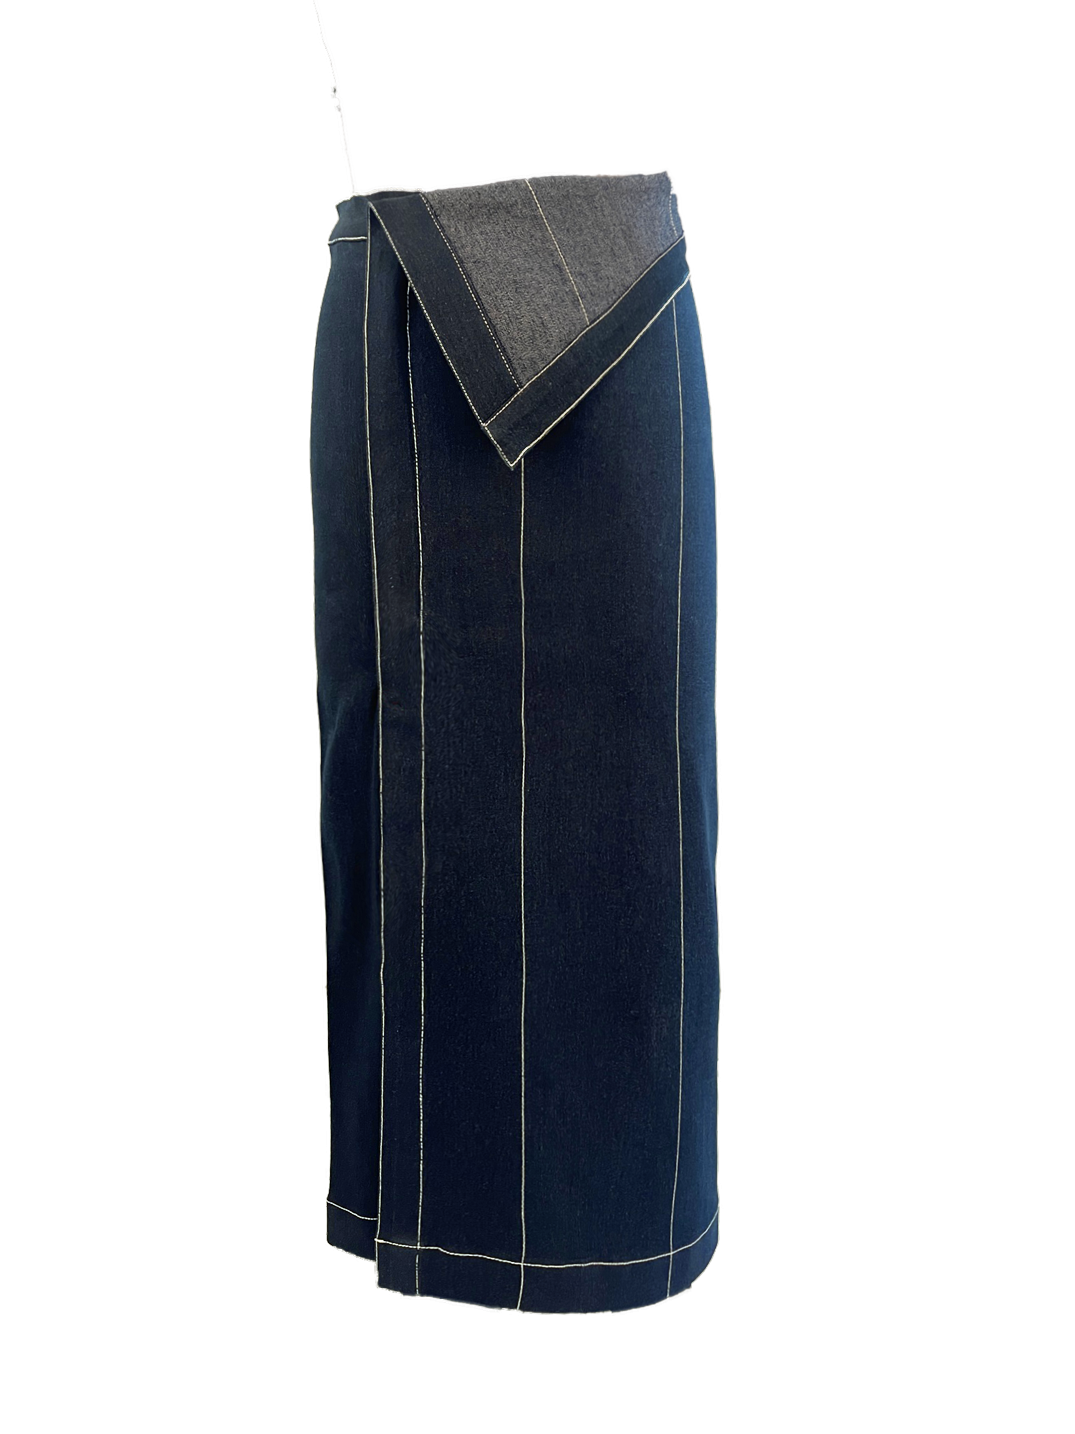 Slate blue Skirt